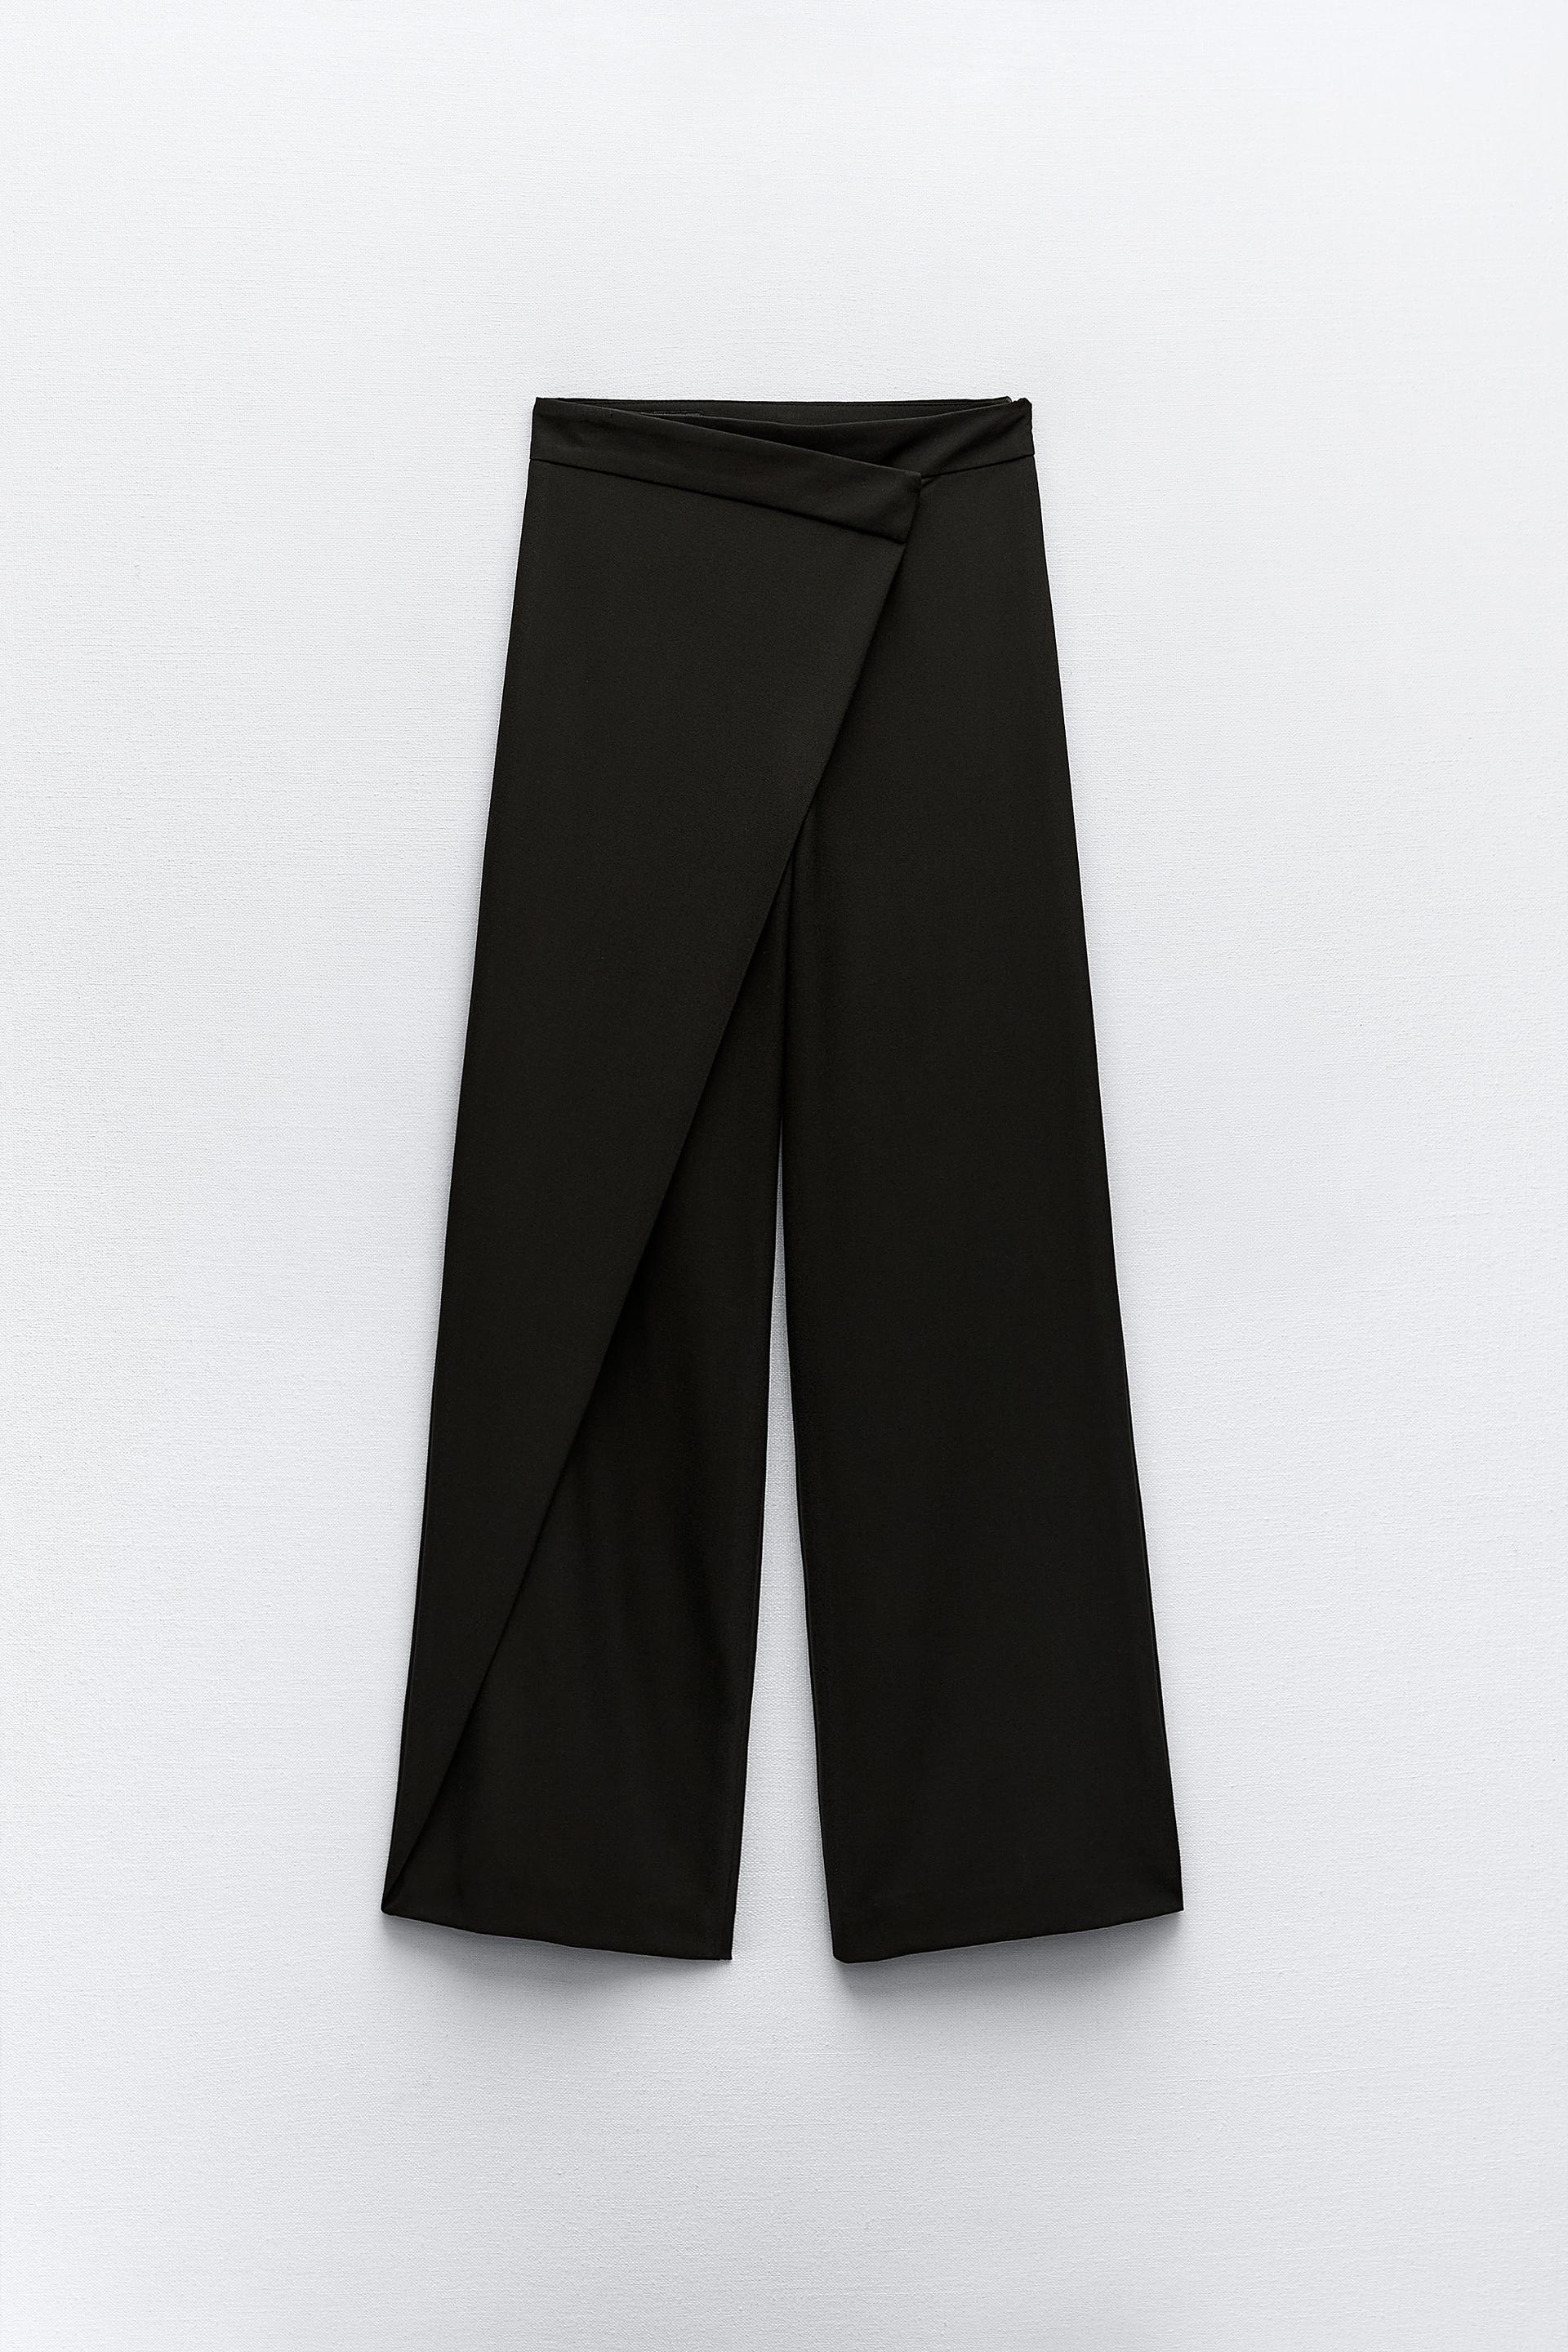 Zara, Pants & Jumpsuits, Zara High Waist Women Trouser 79532 1608532 Nwt  Xl Xxl 2xl